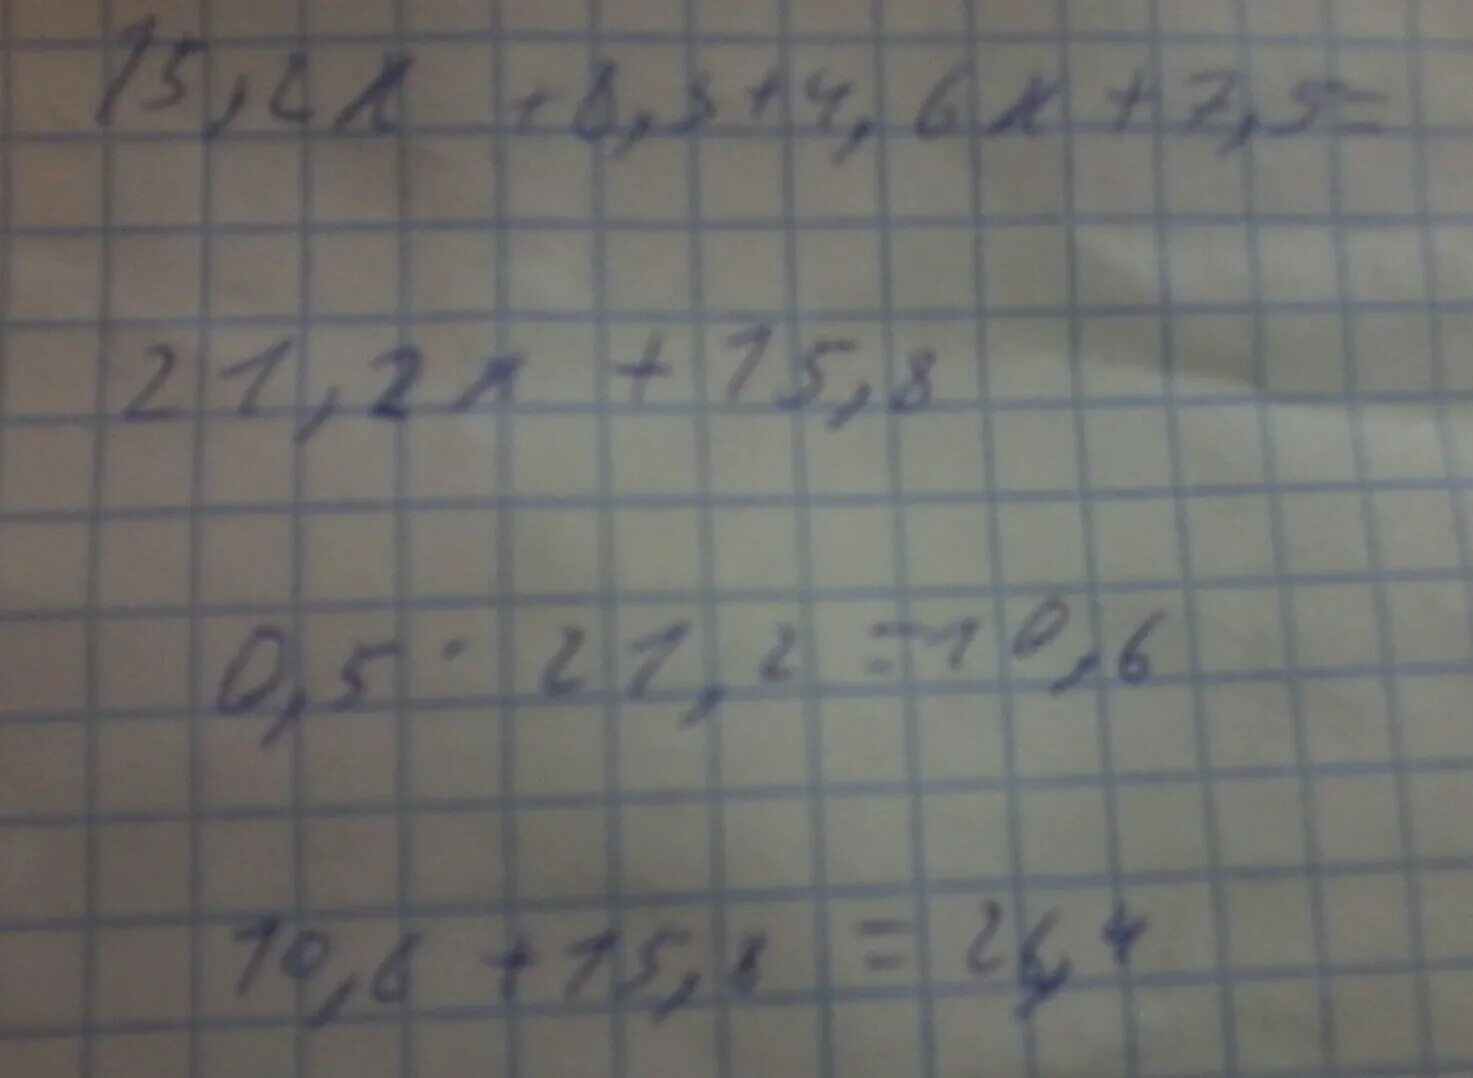 Y 5x 6 при x 1. 7.5X+4.6X-3.7X при x = 0.01. 6x 8y при x 2/3 y 5/8 решение. X-6y^2 + 3y при x -8 y 0,1. (4,7x-4,7y):4,7 при x = -6, y=-4,67.